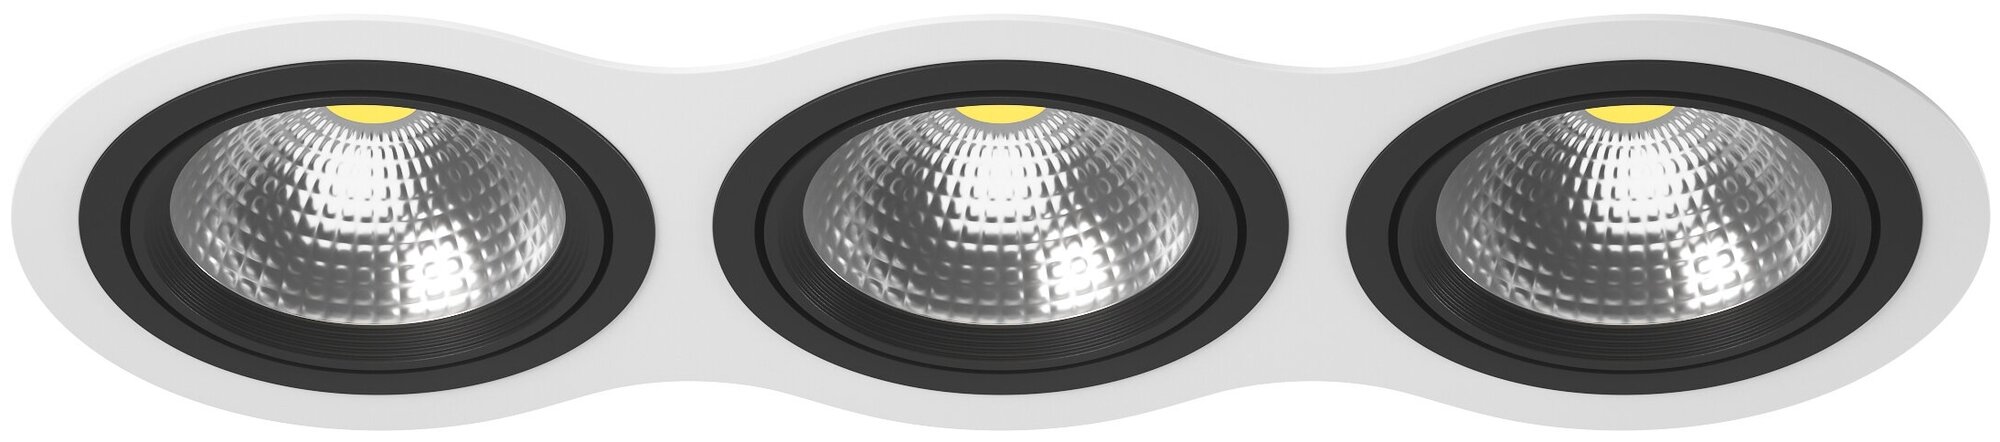 Точечный светильник встроенный черно-белый Lightstar Intero 111 i936070707